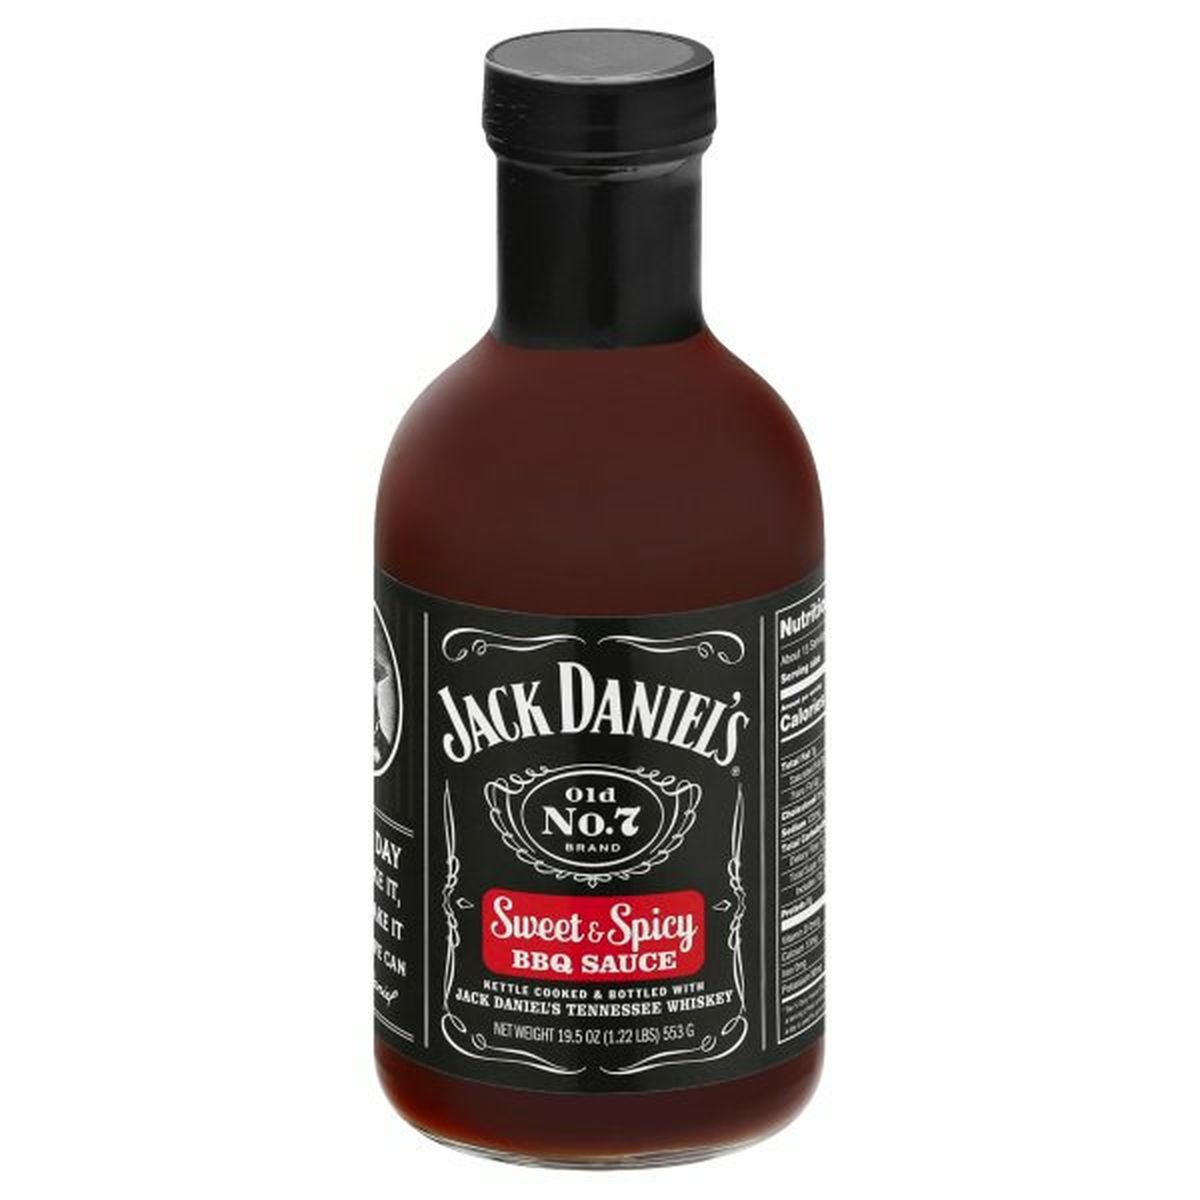 Calories in Jack Daniel's BBQ Sauce, Sweet & Spicy